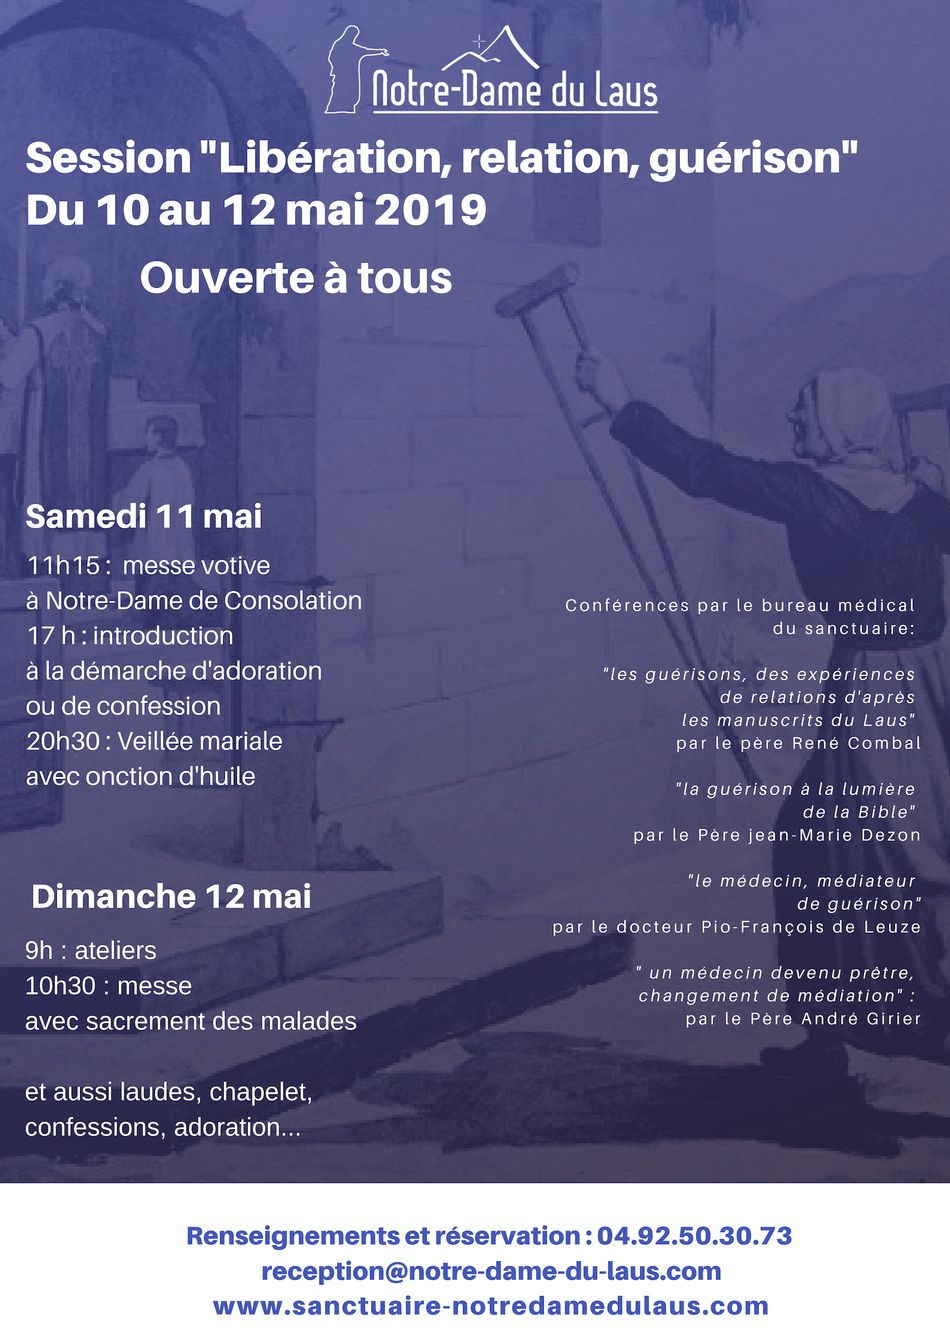 Session « Libération, relation, guérison : un chemin de vie! » du 10 au 12 mai 2019 au Sanctuaire Notre-Dame du Laus (05)